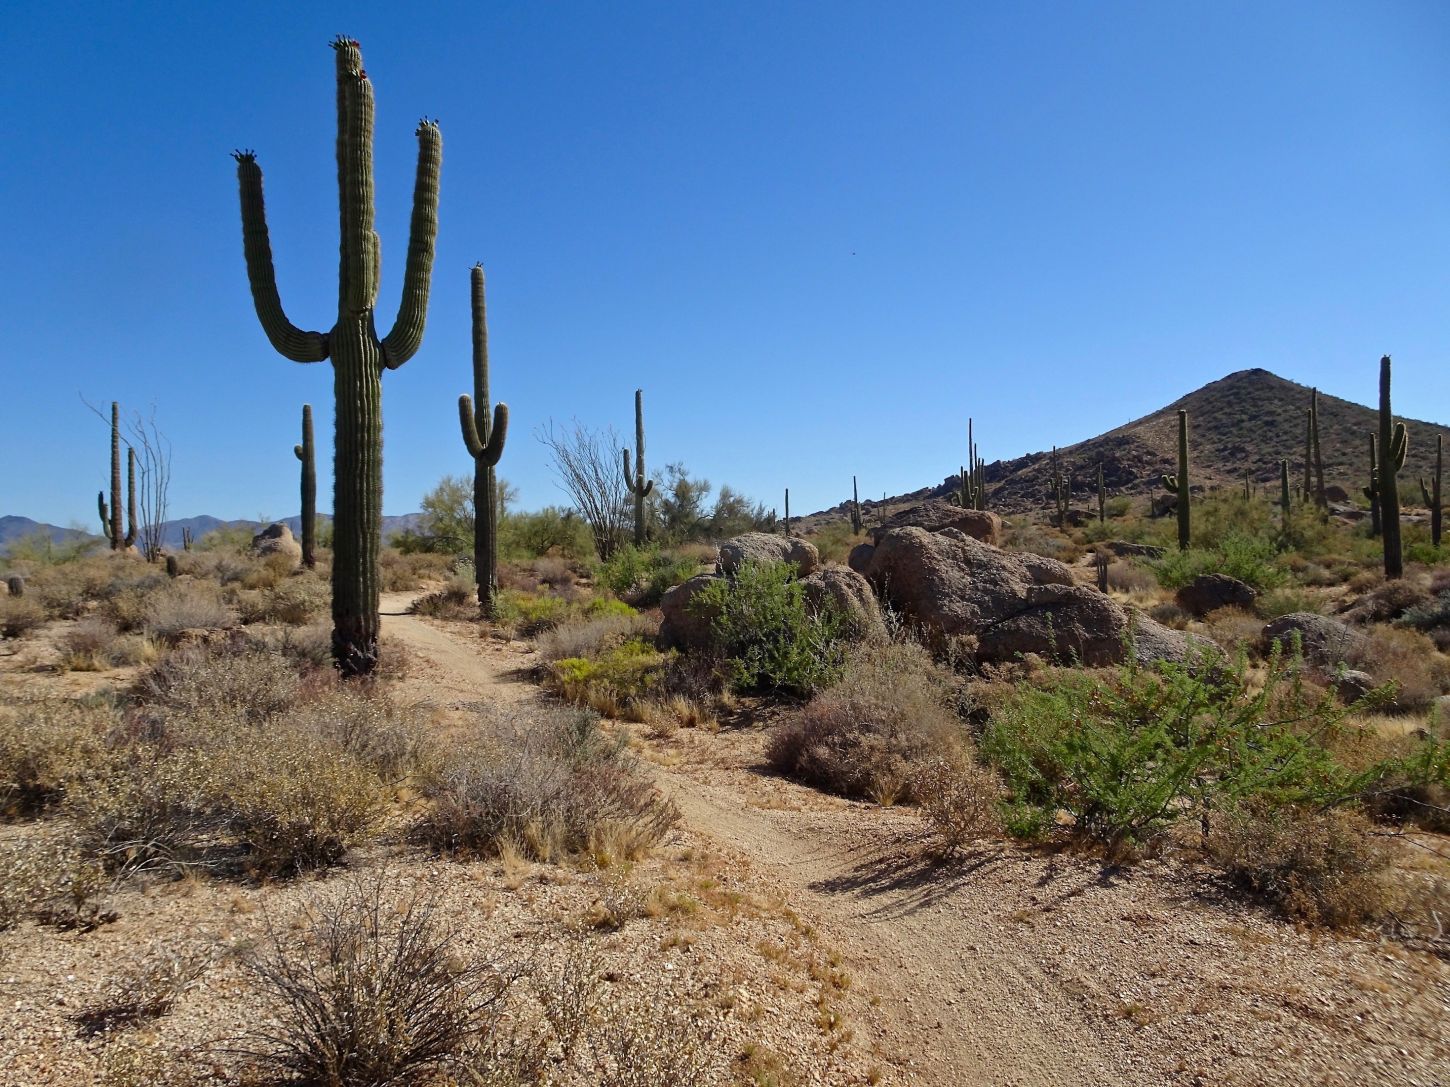 Wunderschöner Saguaro Kaktus auf dem Weg zum Scorpion Point